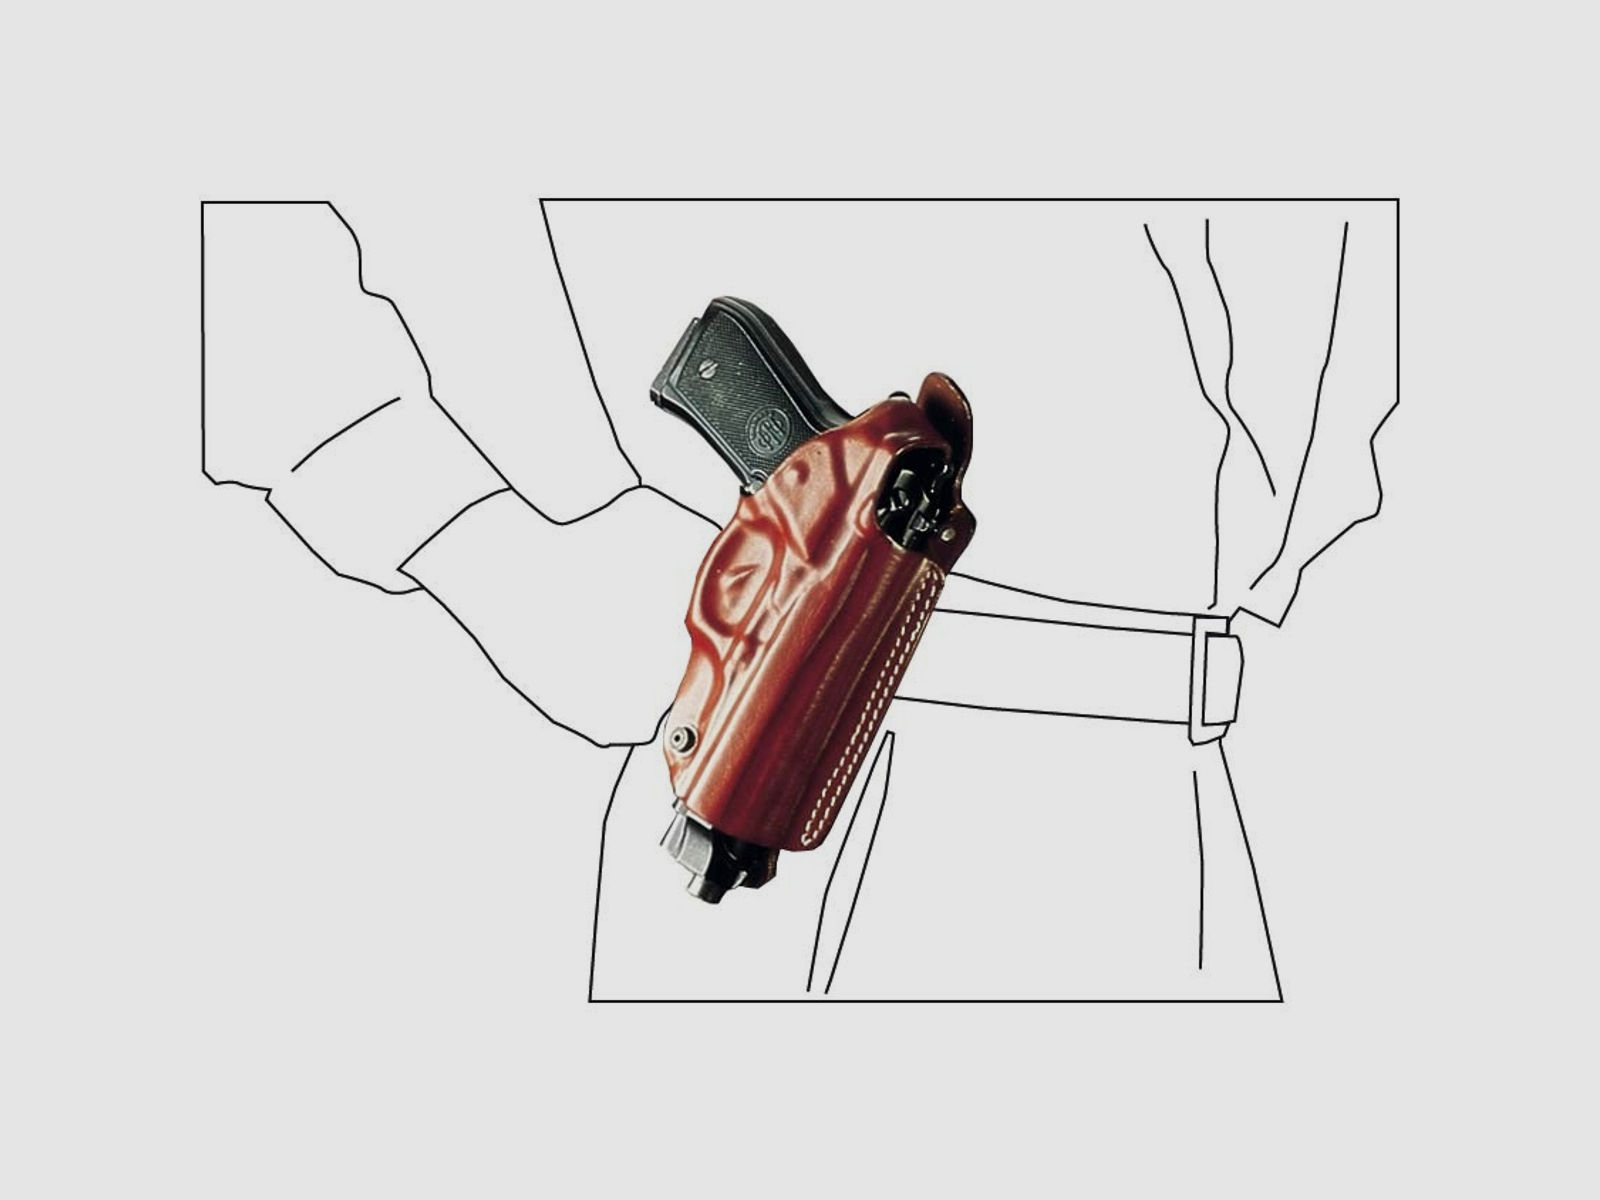 Mehrzweck-Schulterholster/Gürtelholster "Miami" Glock 26/27, Walther PPS-Schwarz-Linkshänder